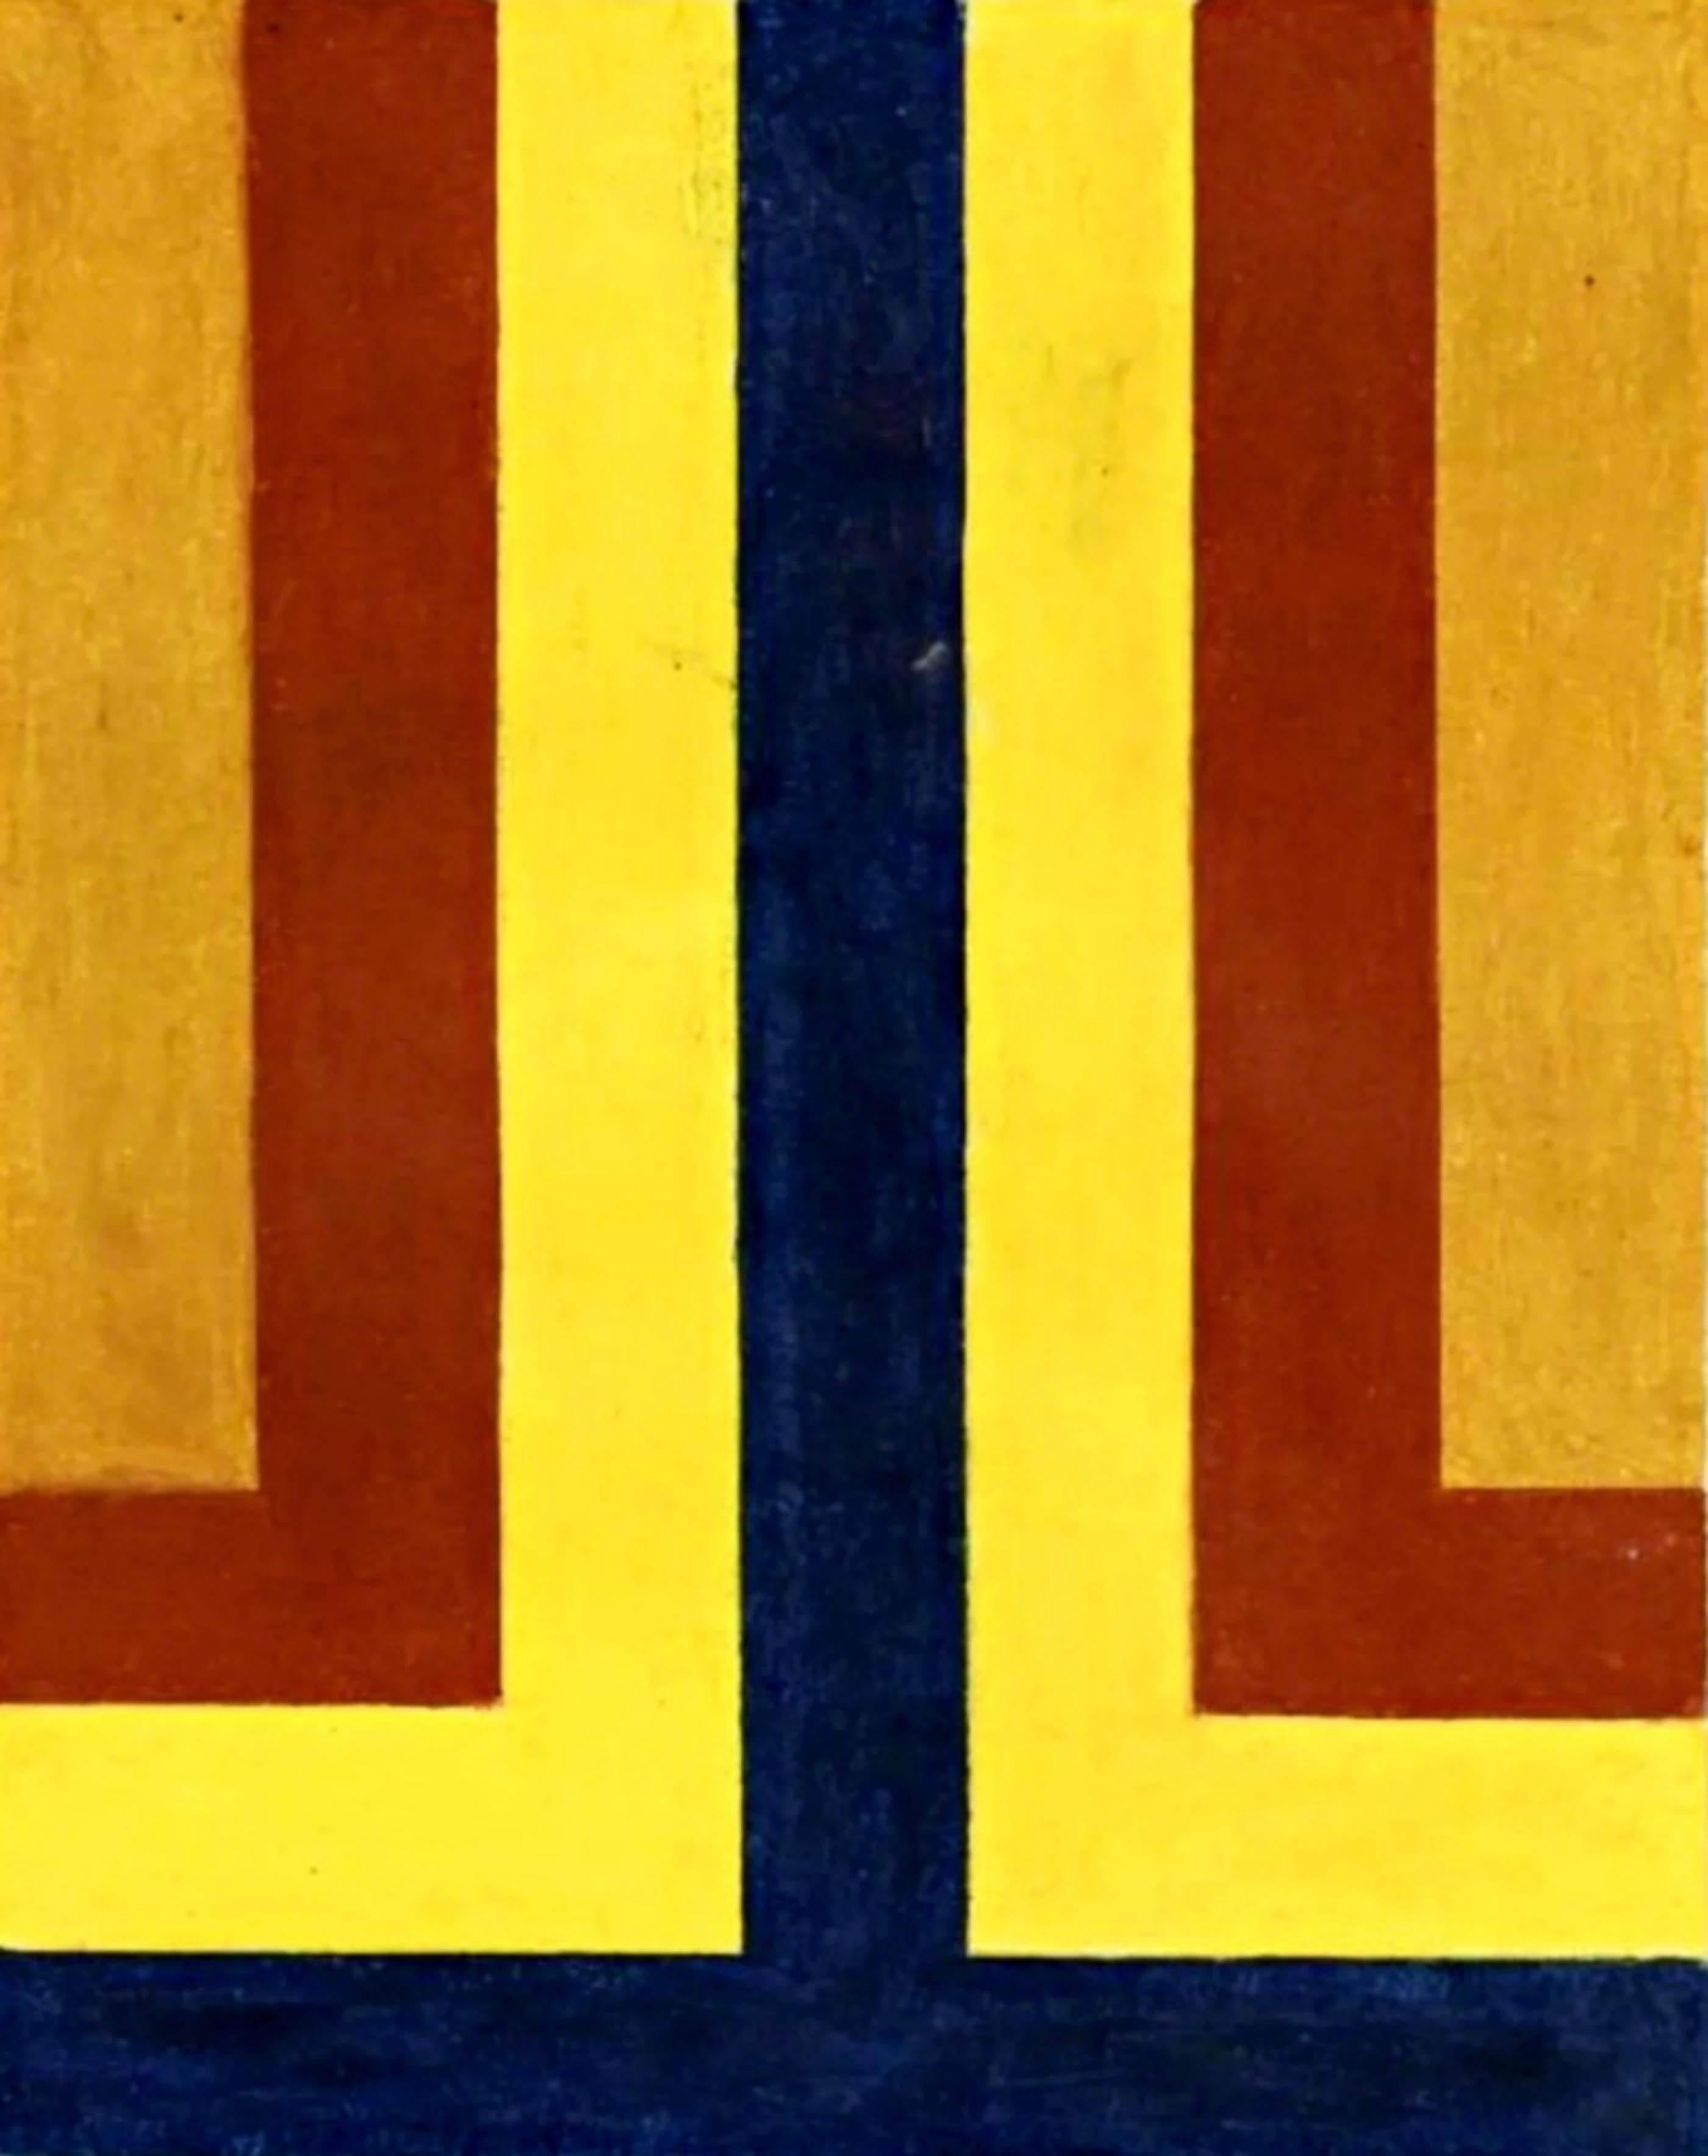 Howard Mehring Abstract Painting – Studie für Frühlingsfeger, signiertes Gemälde aus den 1960er Jahren, Washingtoner Farbschule, gerahmt